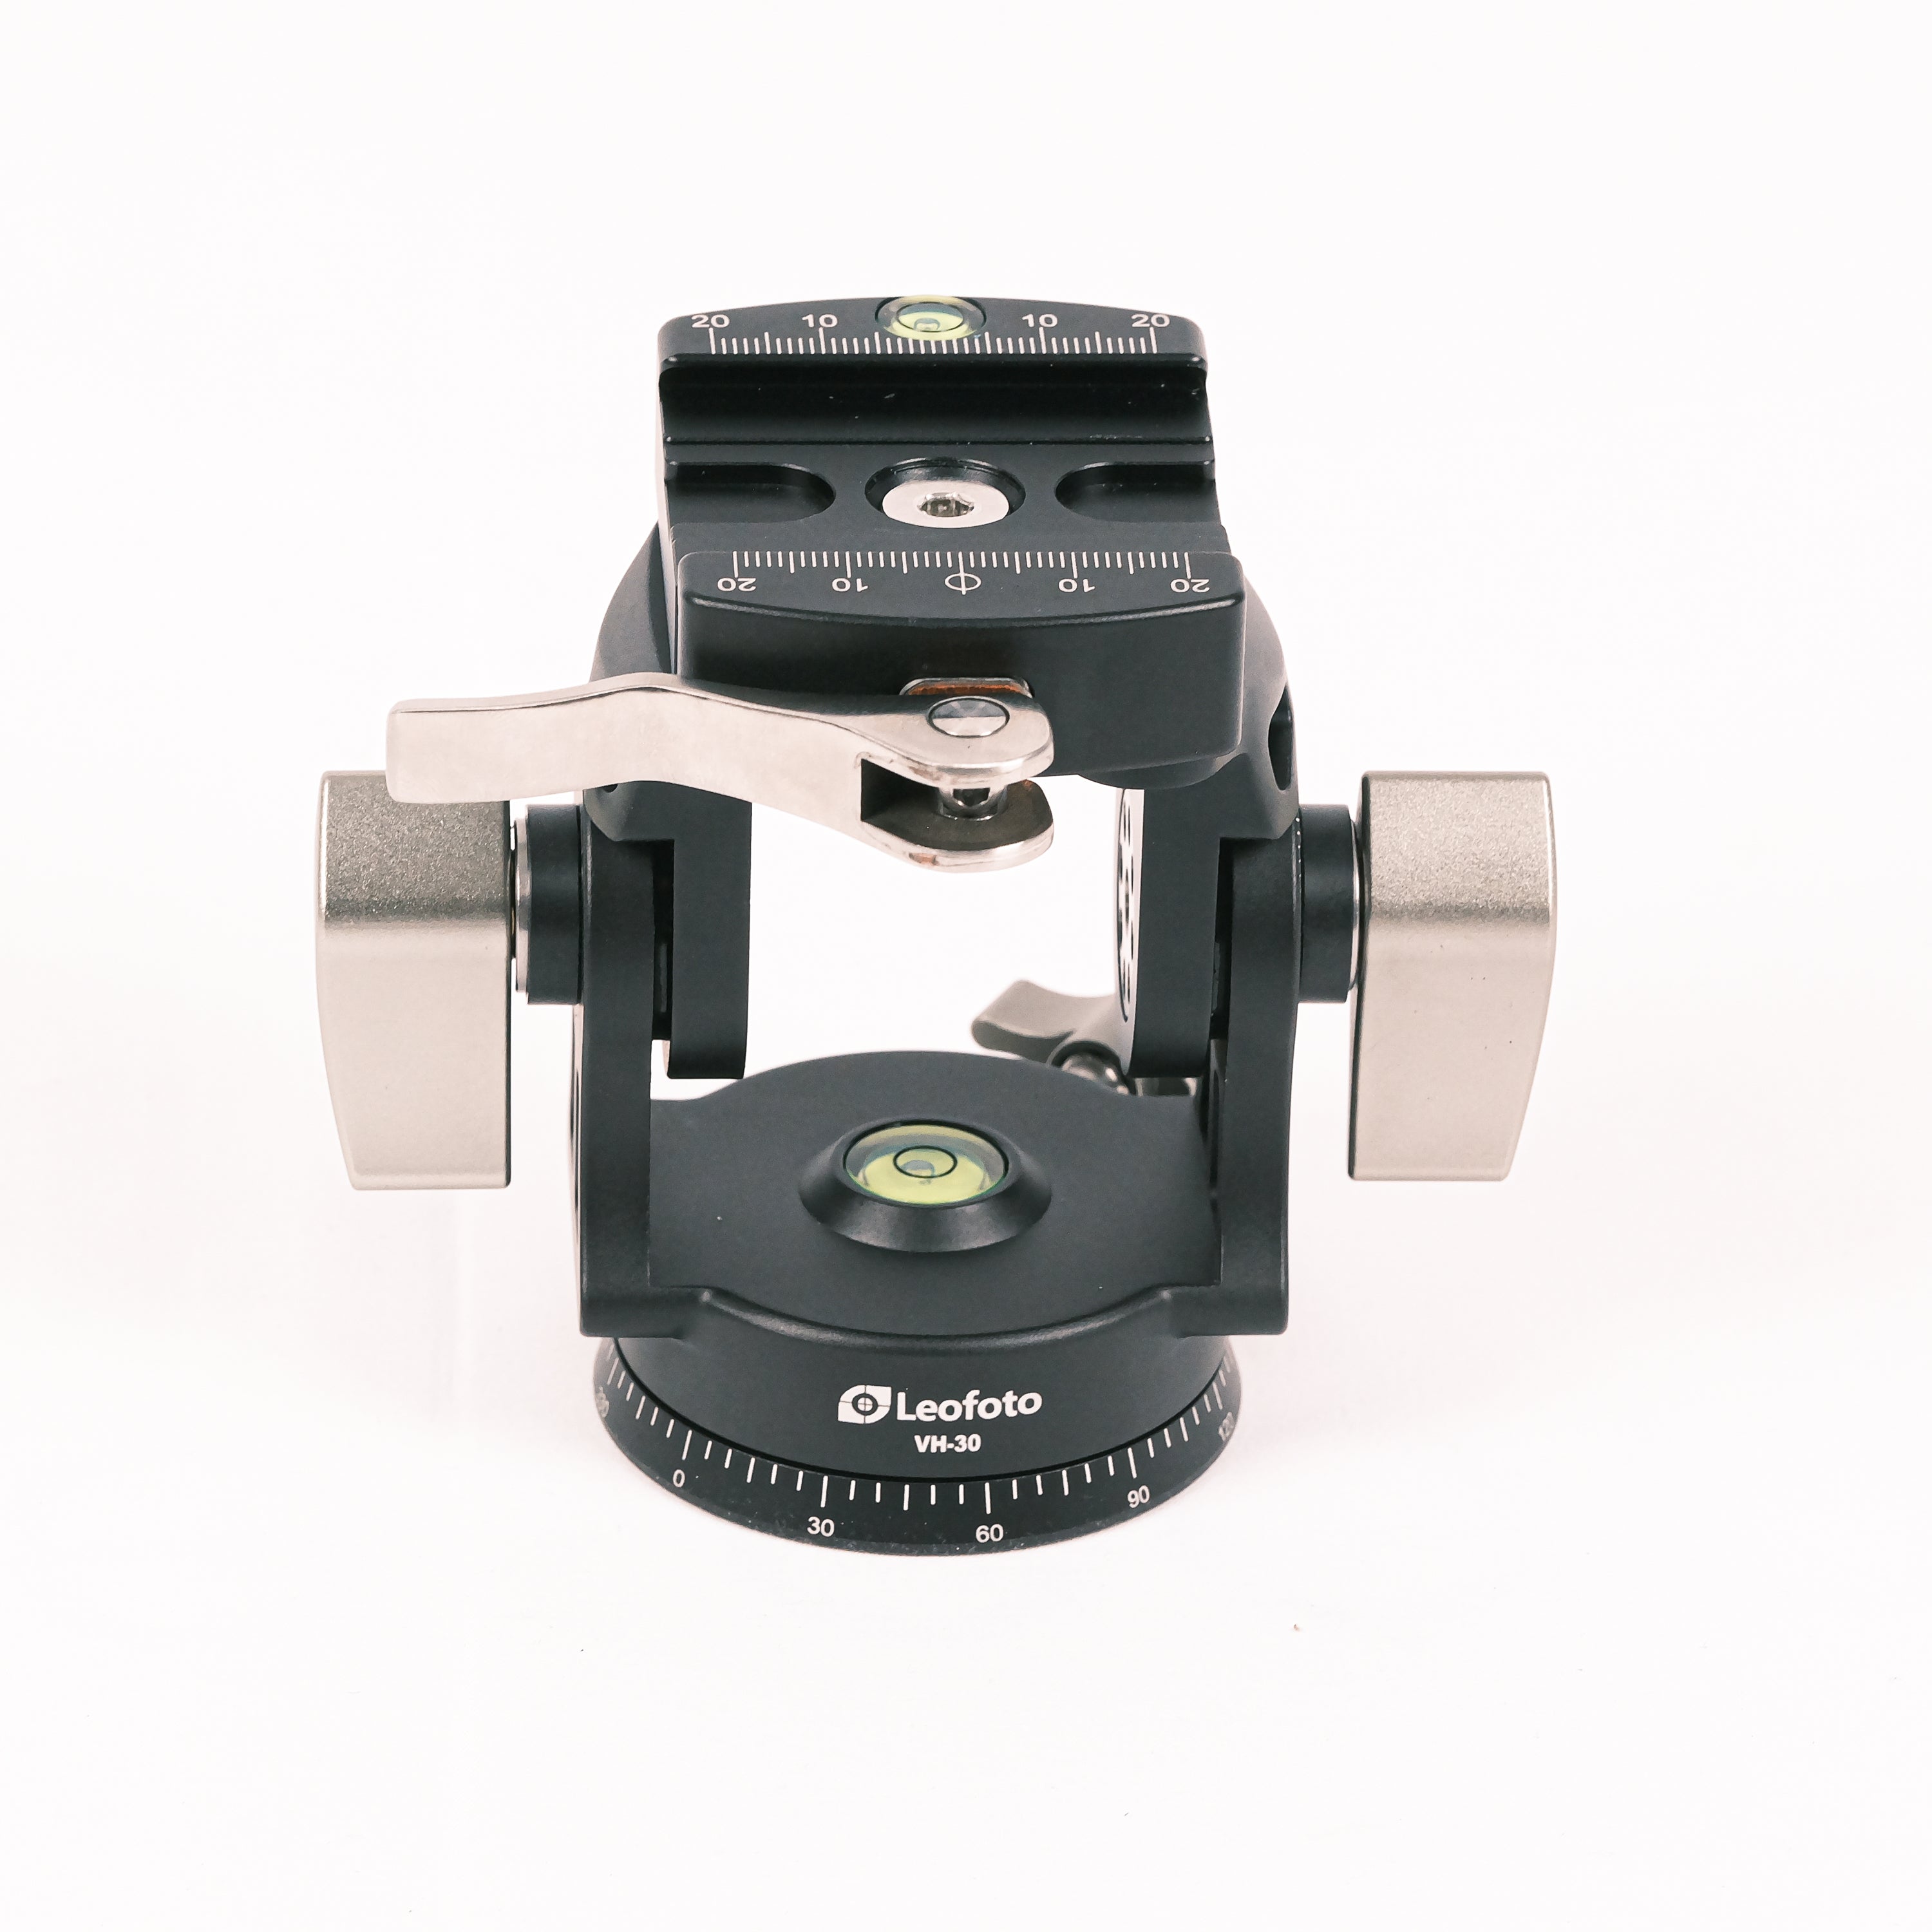 Leofoto VH-30LR Two-Way Tele Lens Head | Arca Compatible Lever Clamp